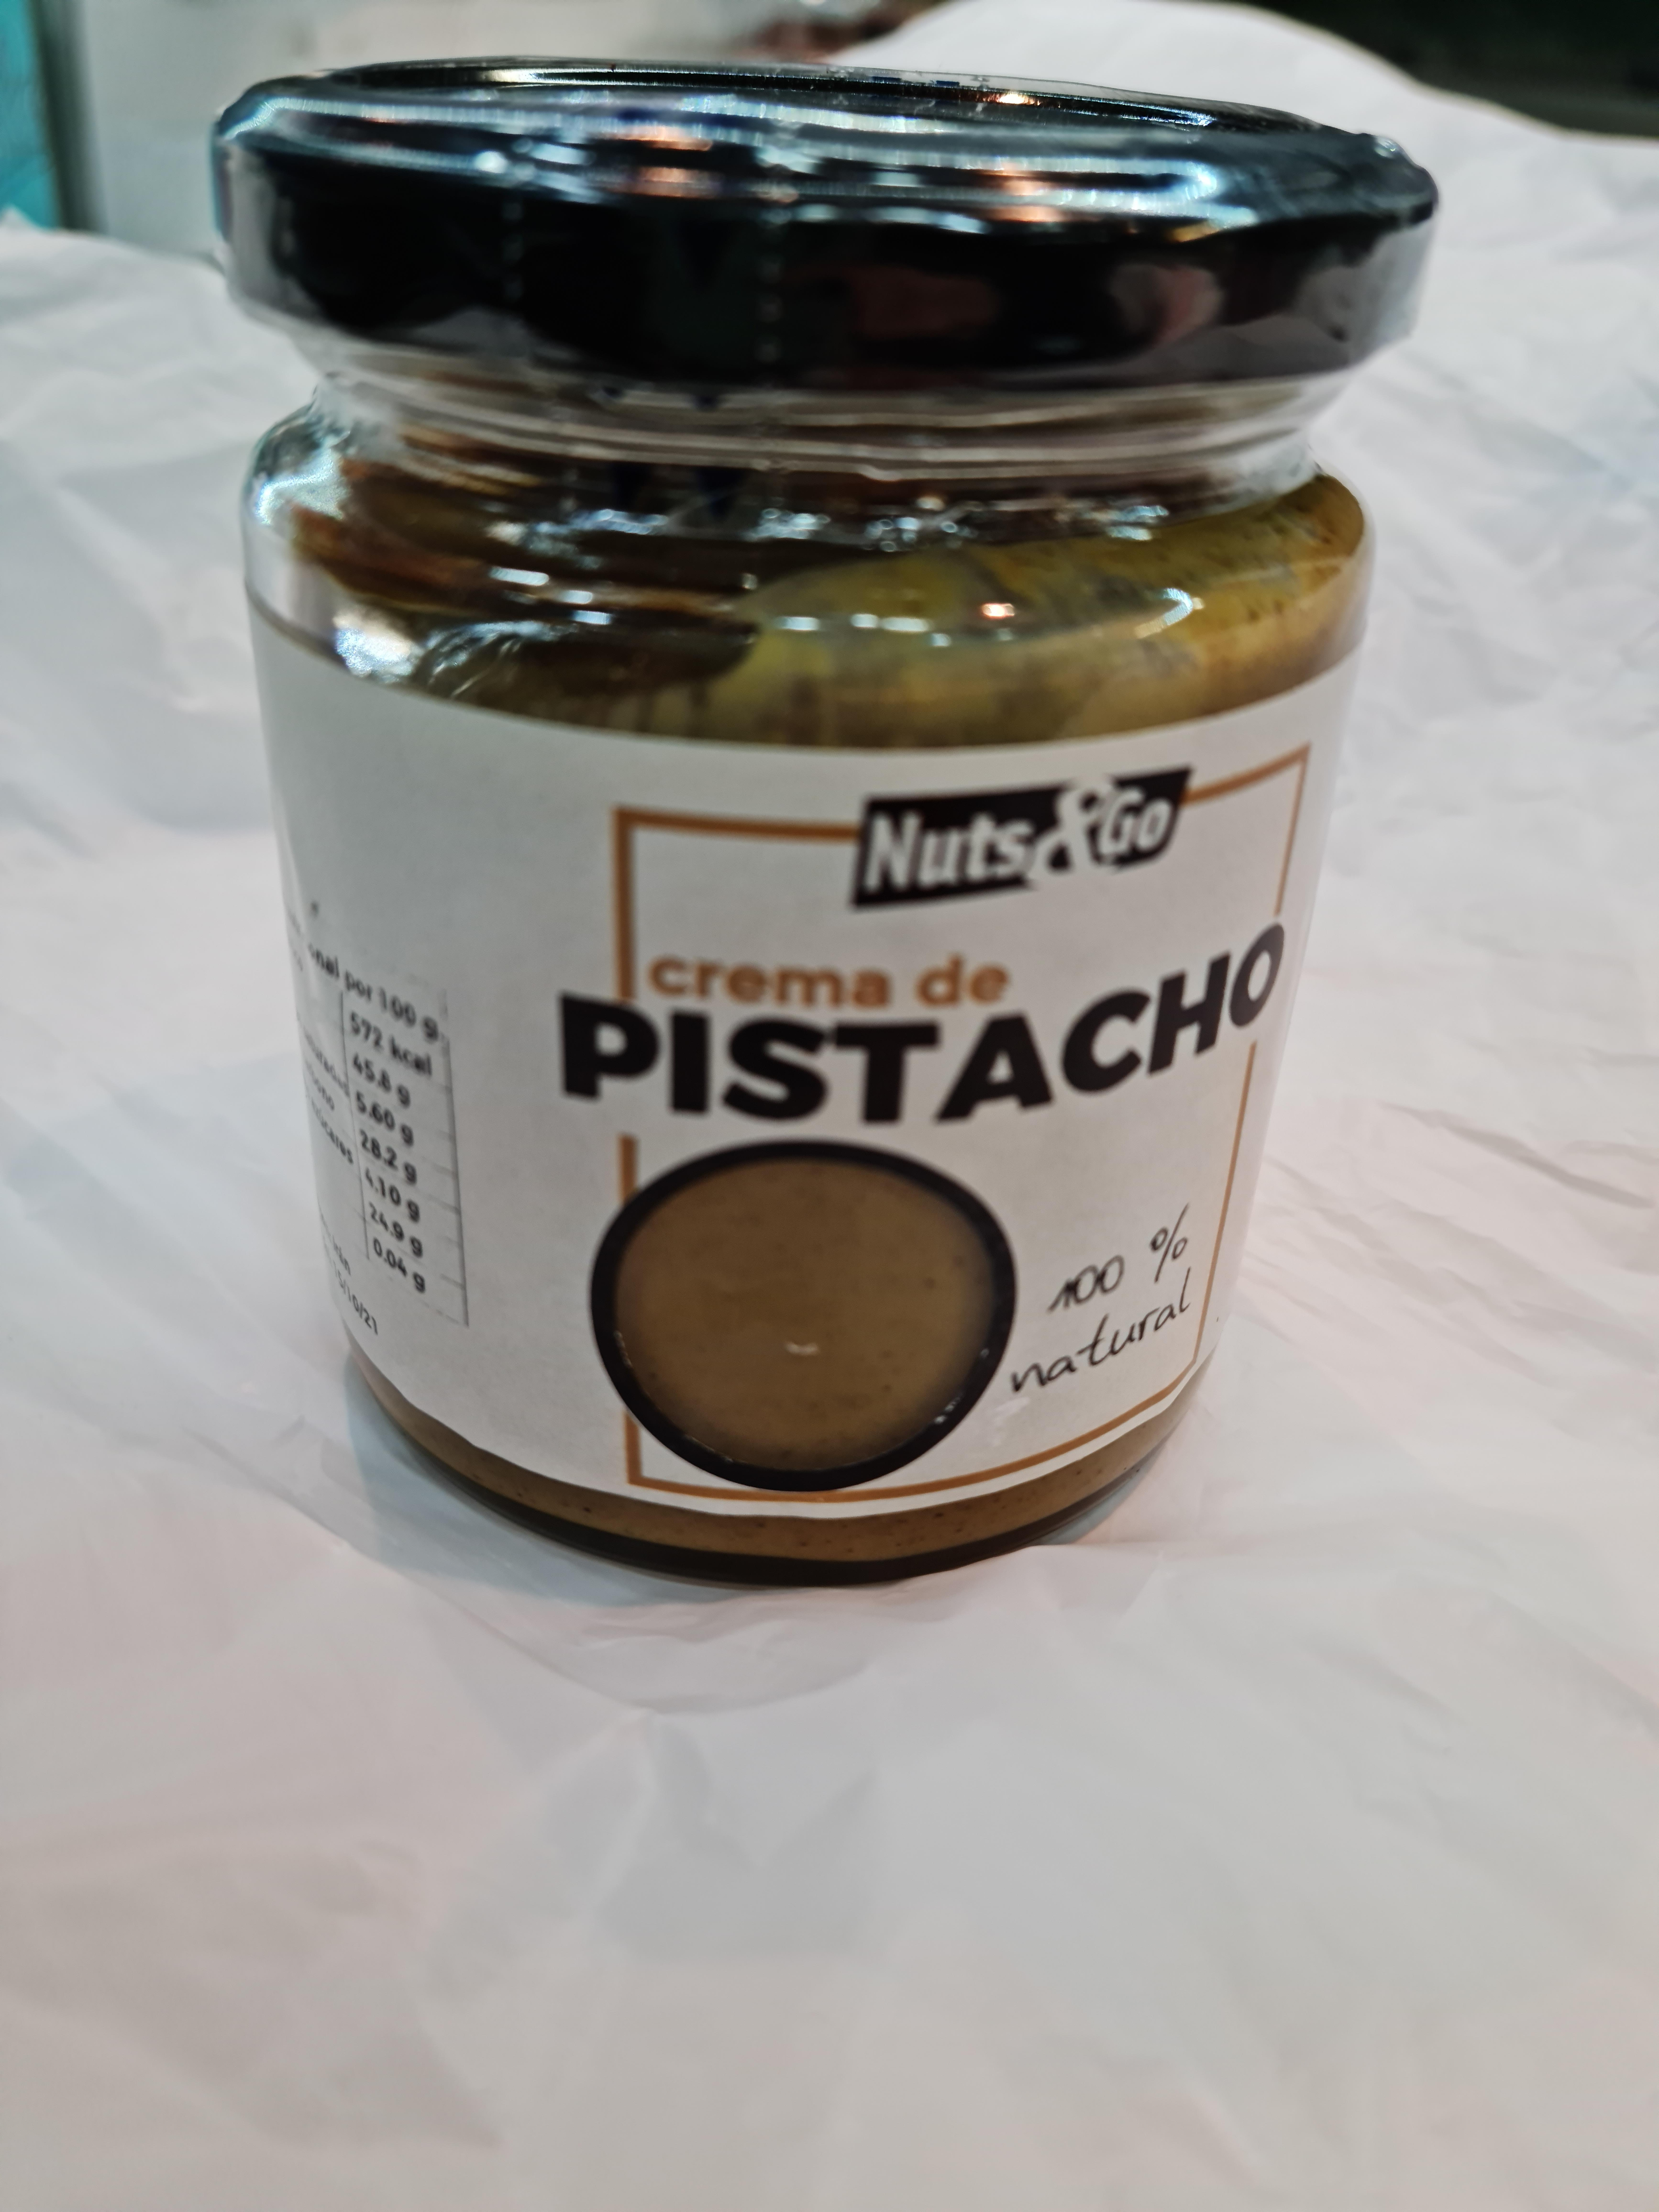 Nuts&go - Crema de pistacho 